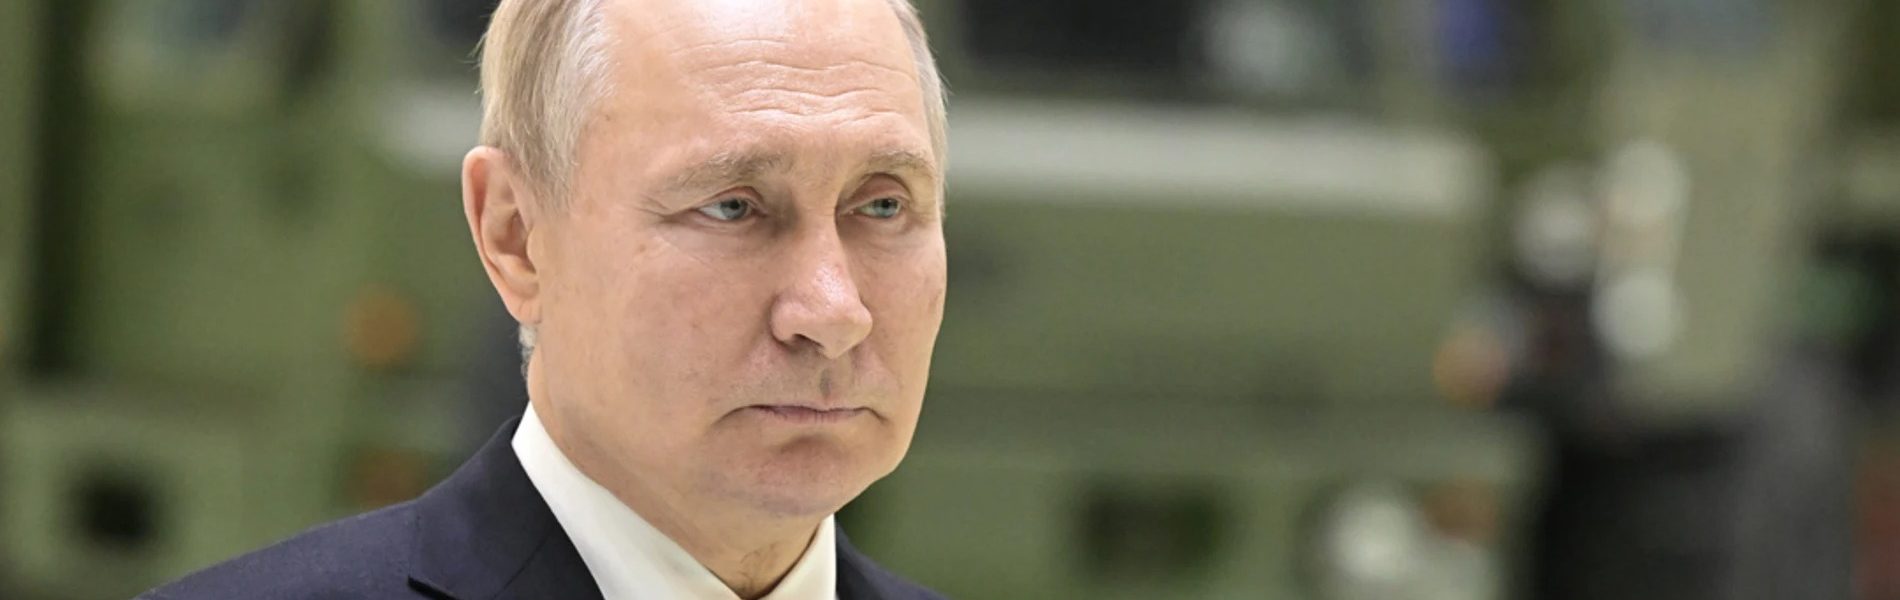 Todos los funcionarios cercanos a Putin que han muerto en circunstancias misteriosas